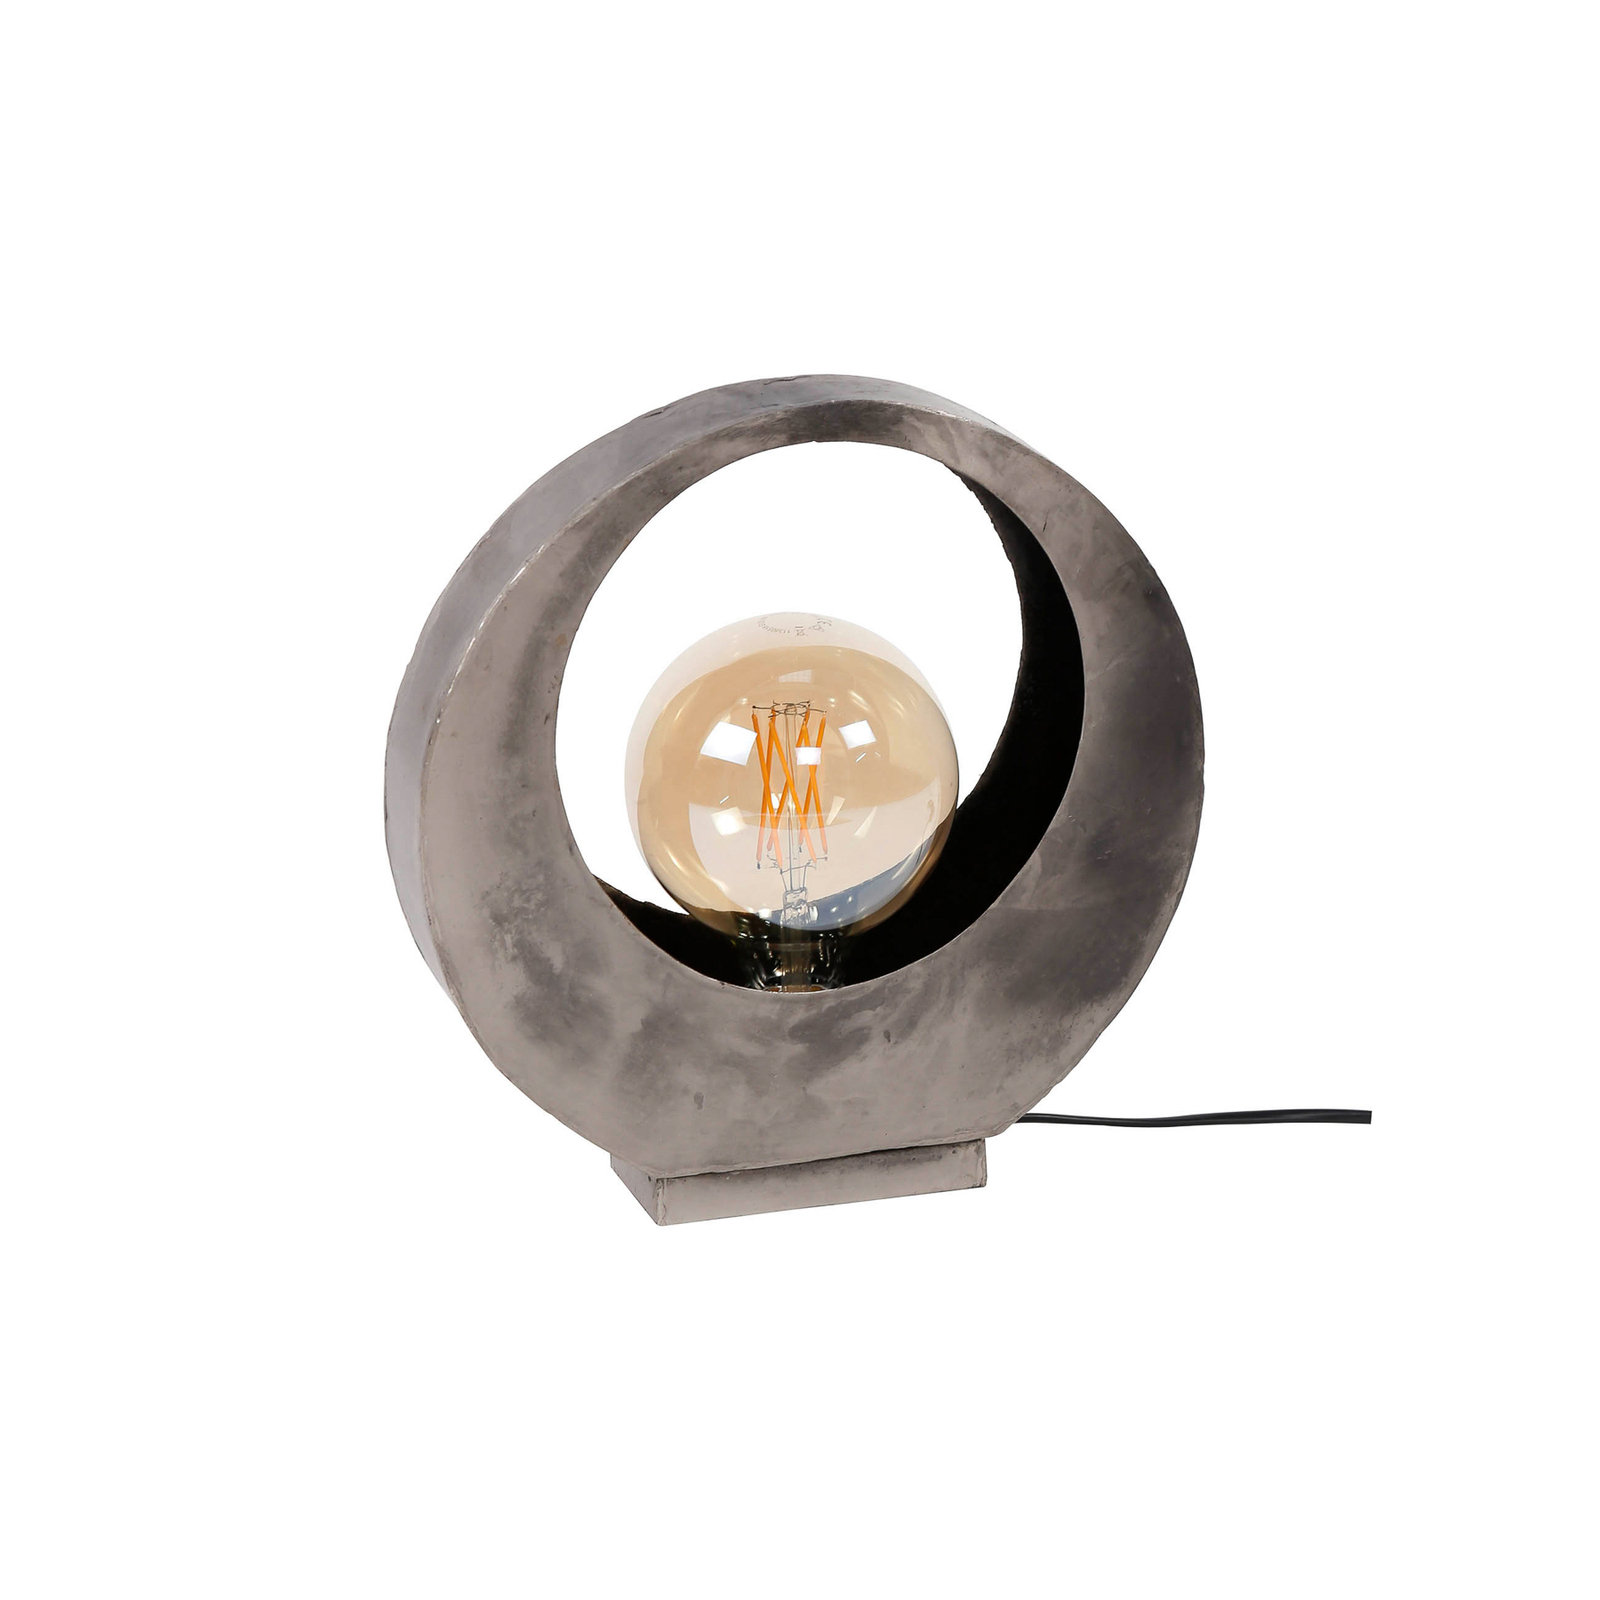 Tafellamp Sonorc, 1-lamp, volle maan